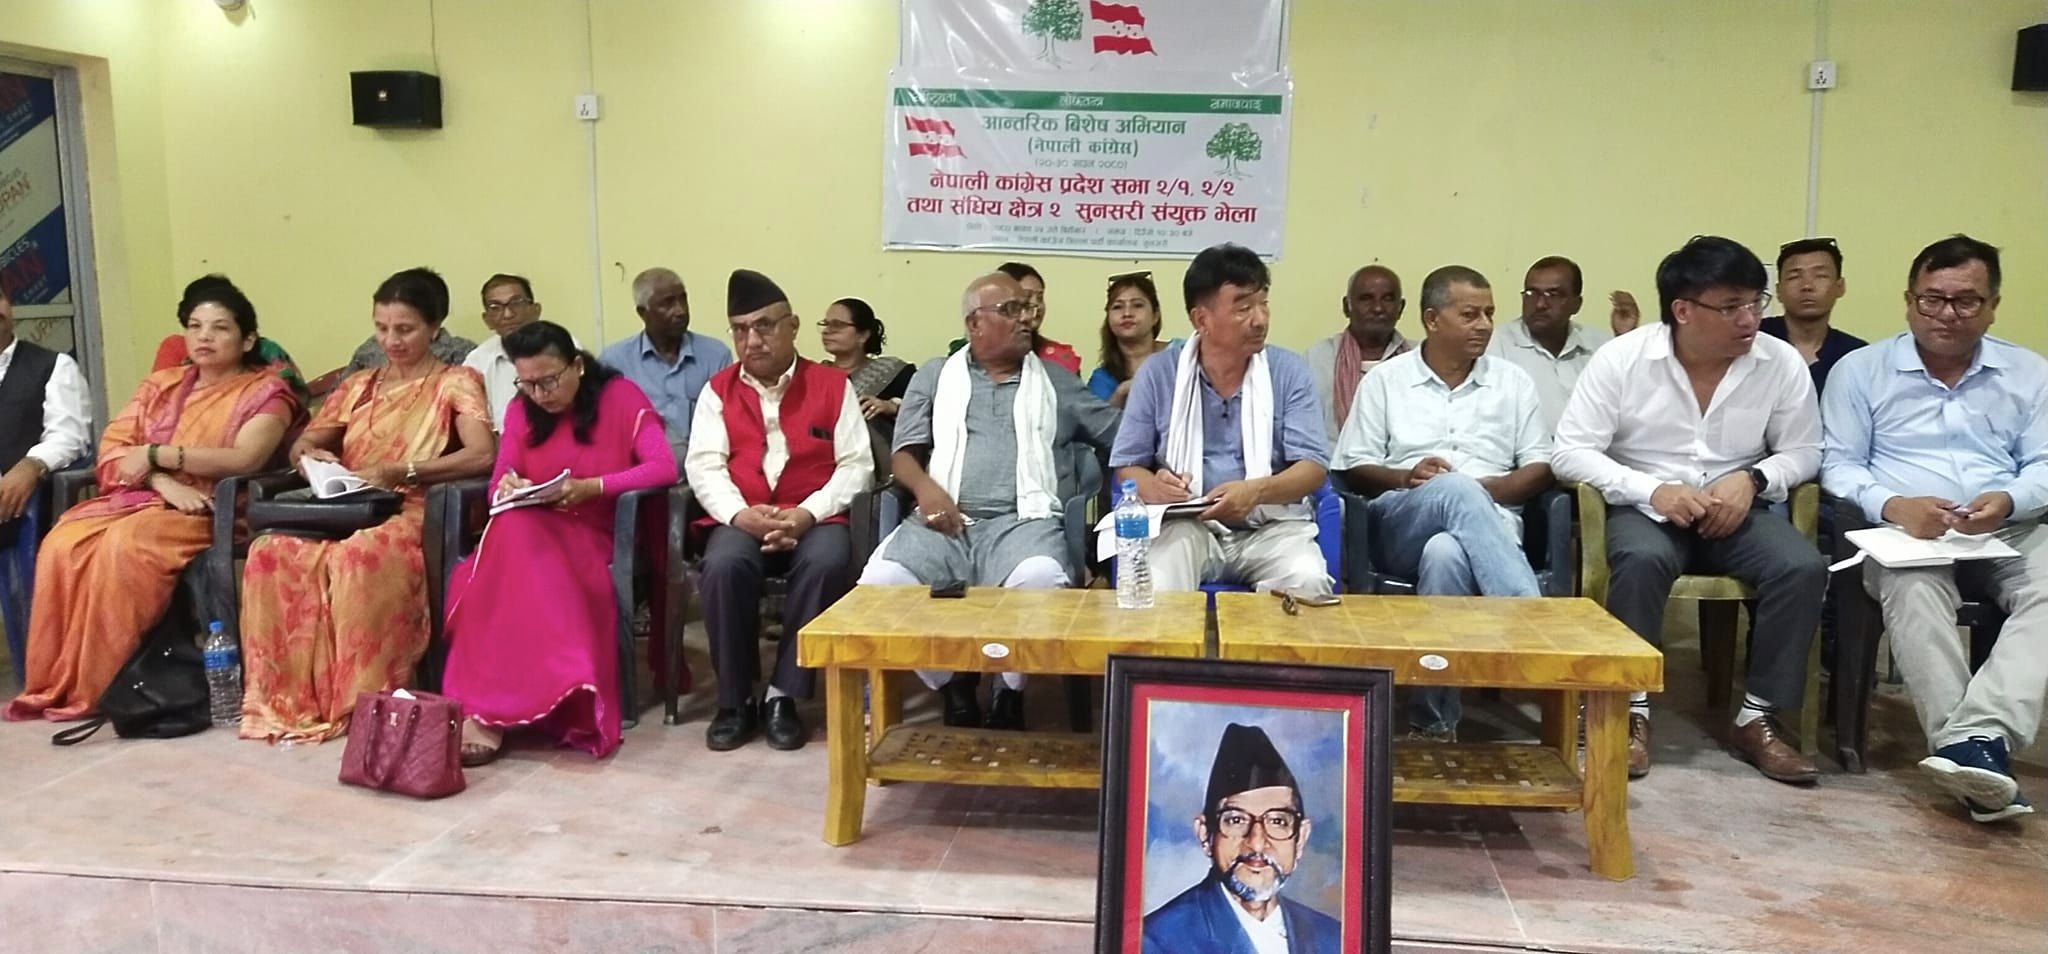 नेपाली कांग्रेसको आन्तरिक विशेष अभियान